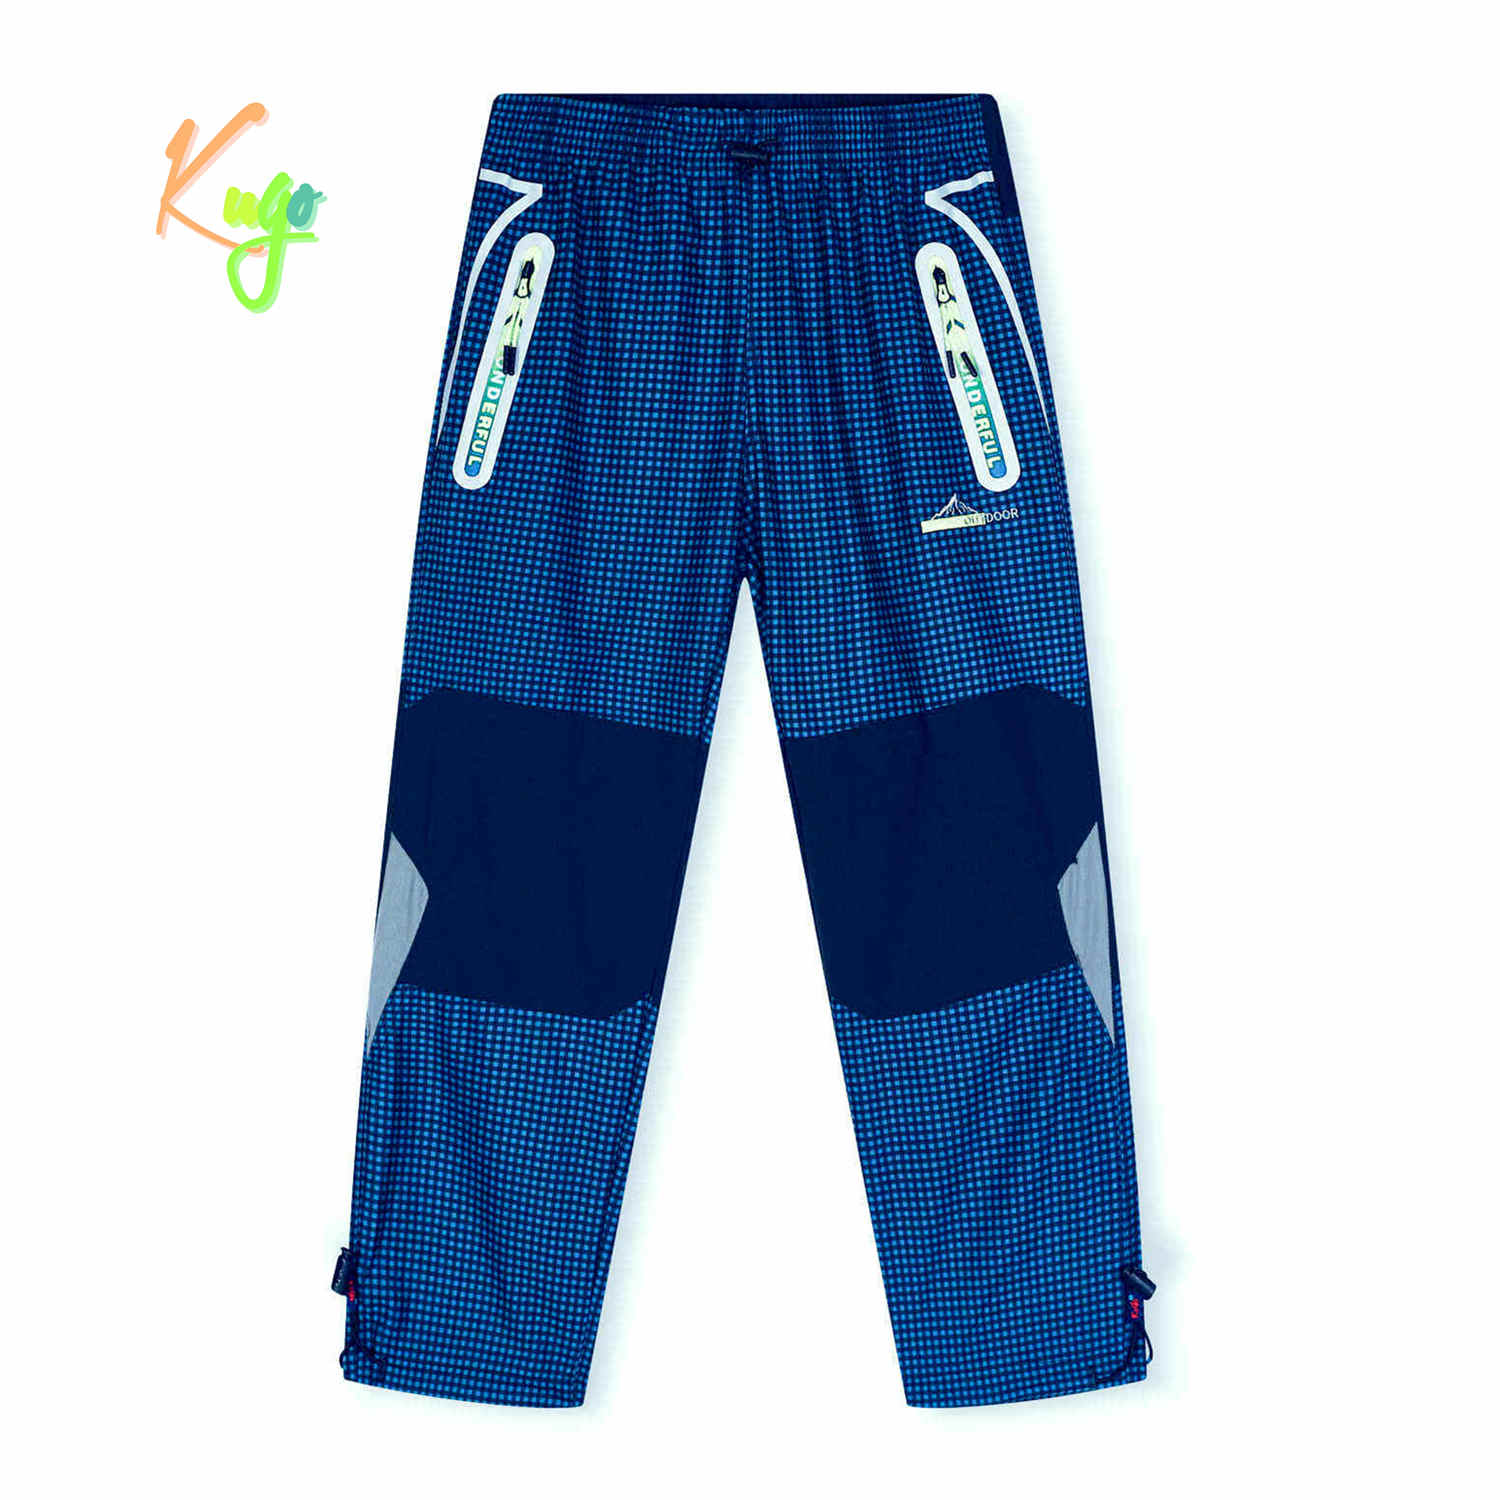 Chlapecké outdoorové kalhoty - KUGO G9655, modrá / zelené zipy Barva: Modrá, Velikost: 134